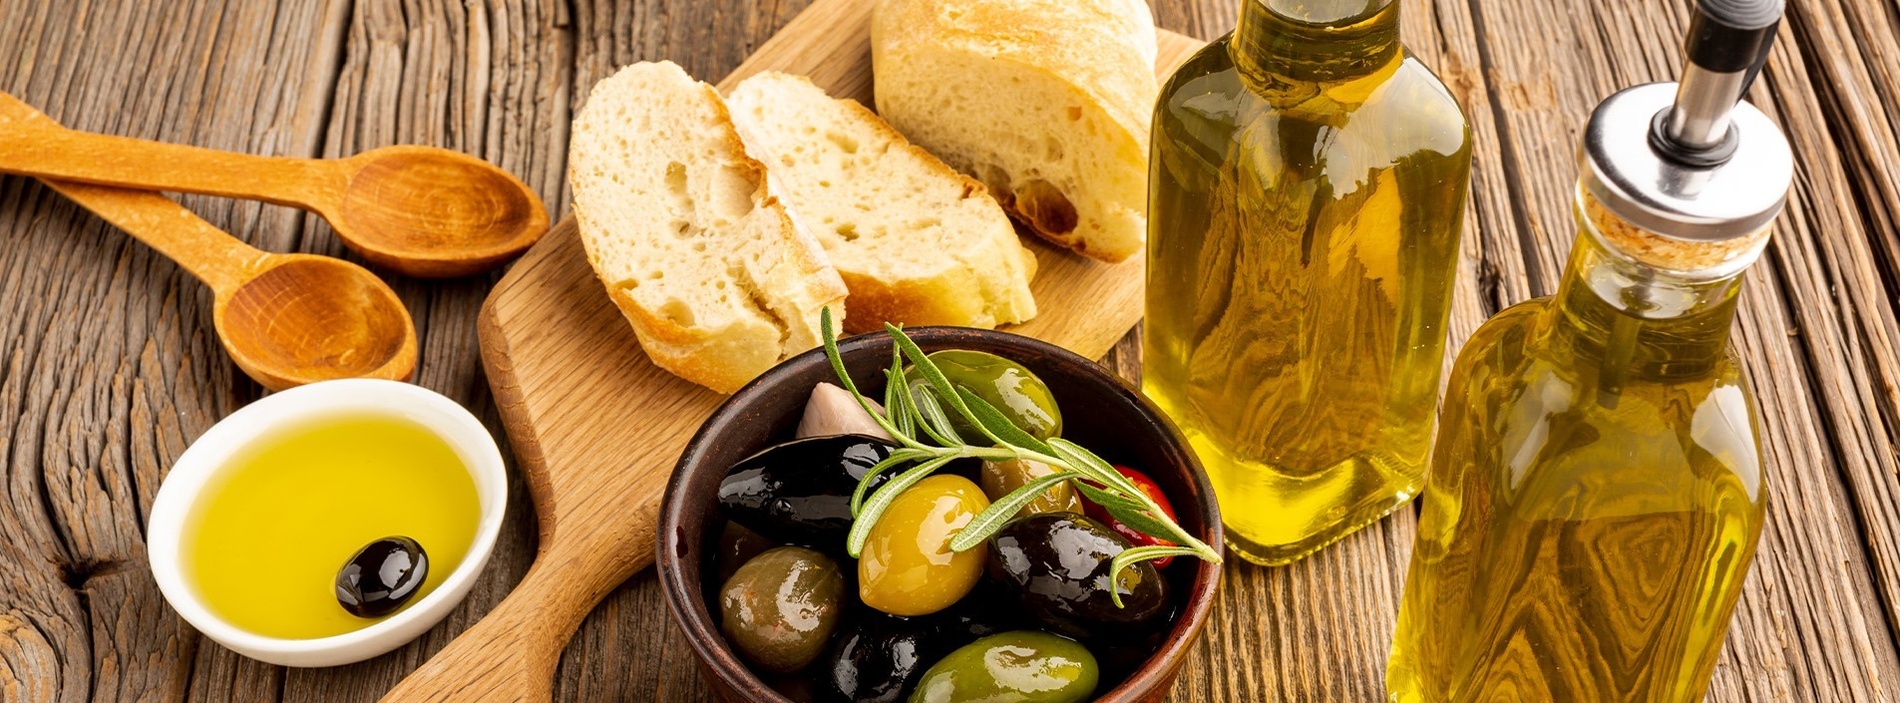 dos botellas de aceite de oliva junto a un cuenco de aceitunas y un trozo de pan